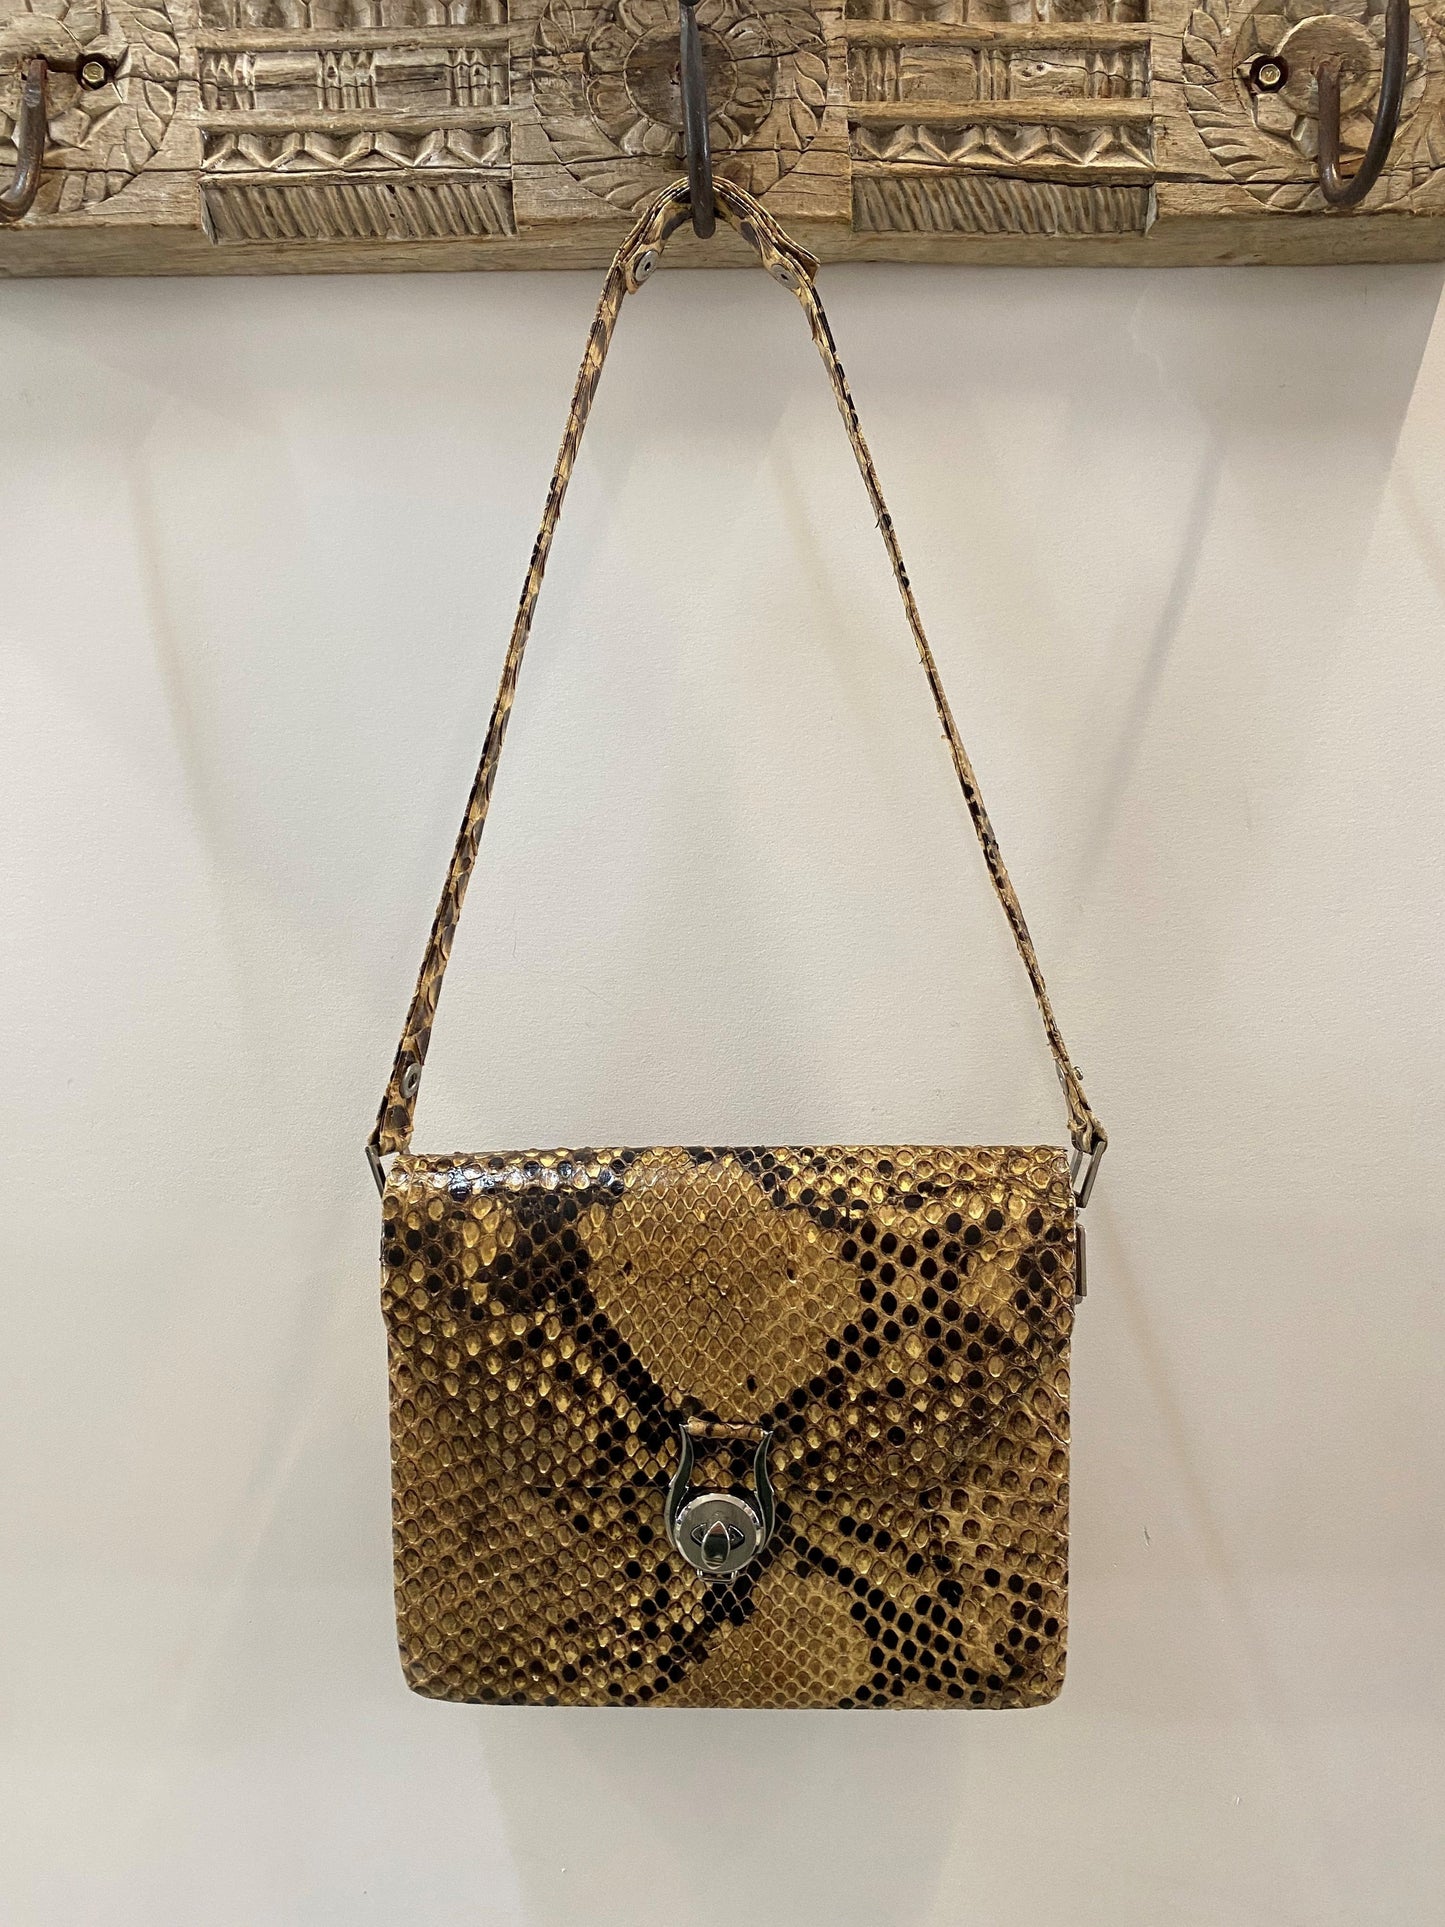 RARE Vintage CHANEL Python Snake Skin Handbag or Clutch